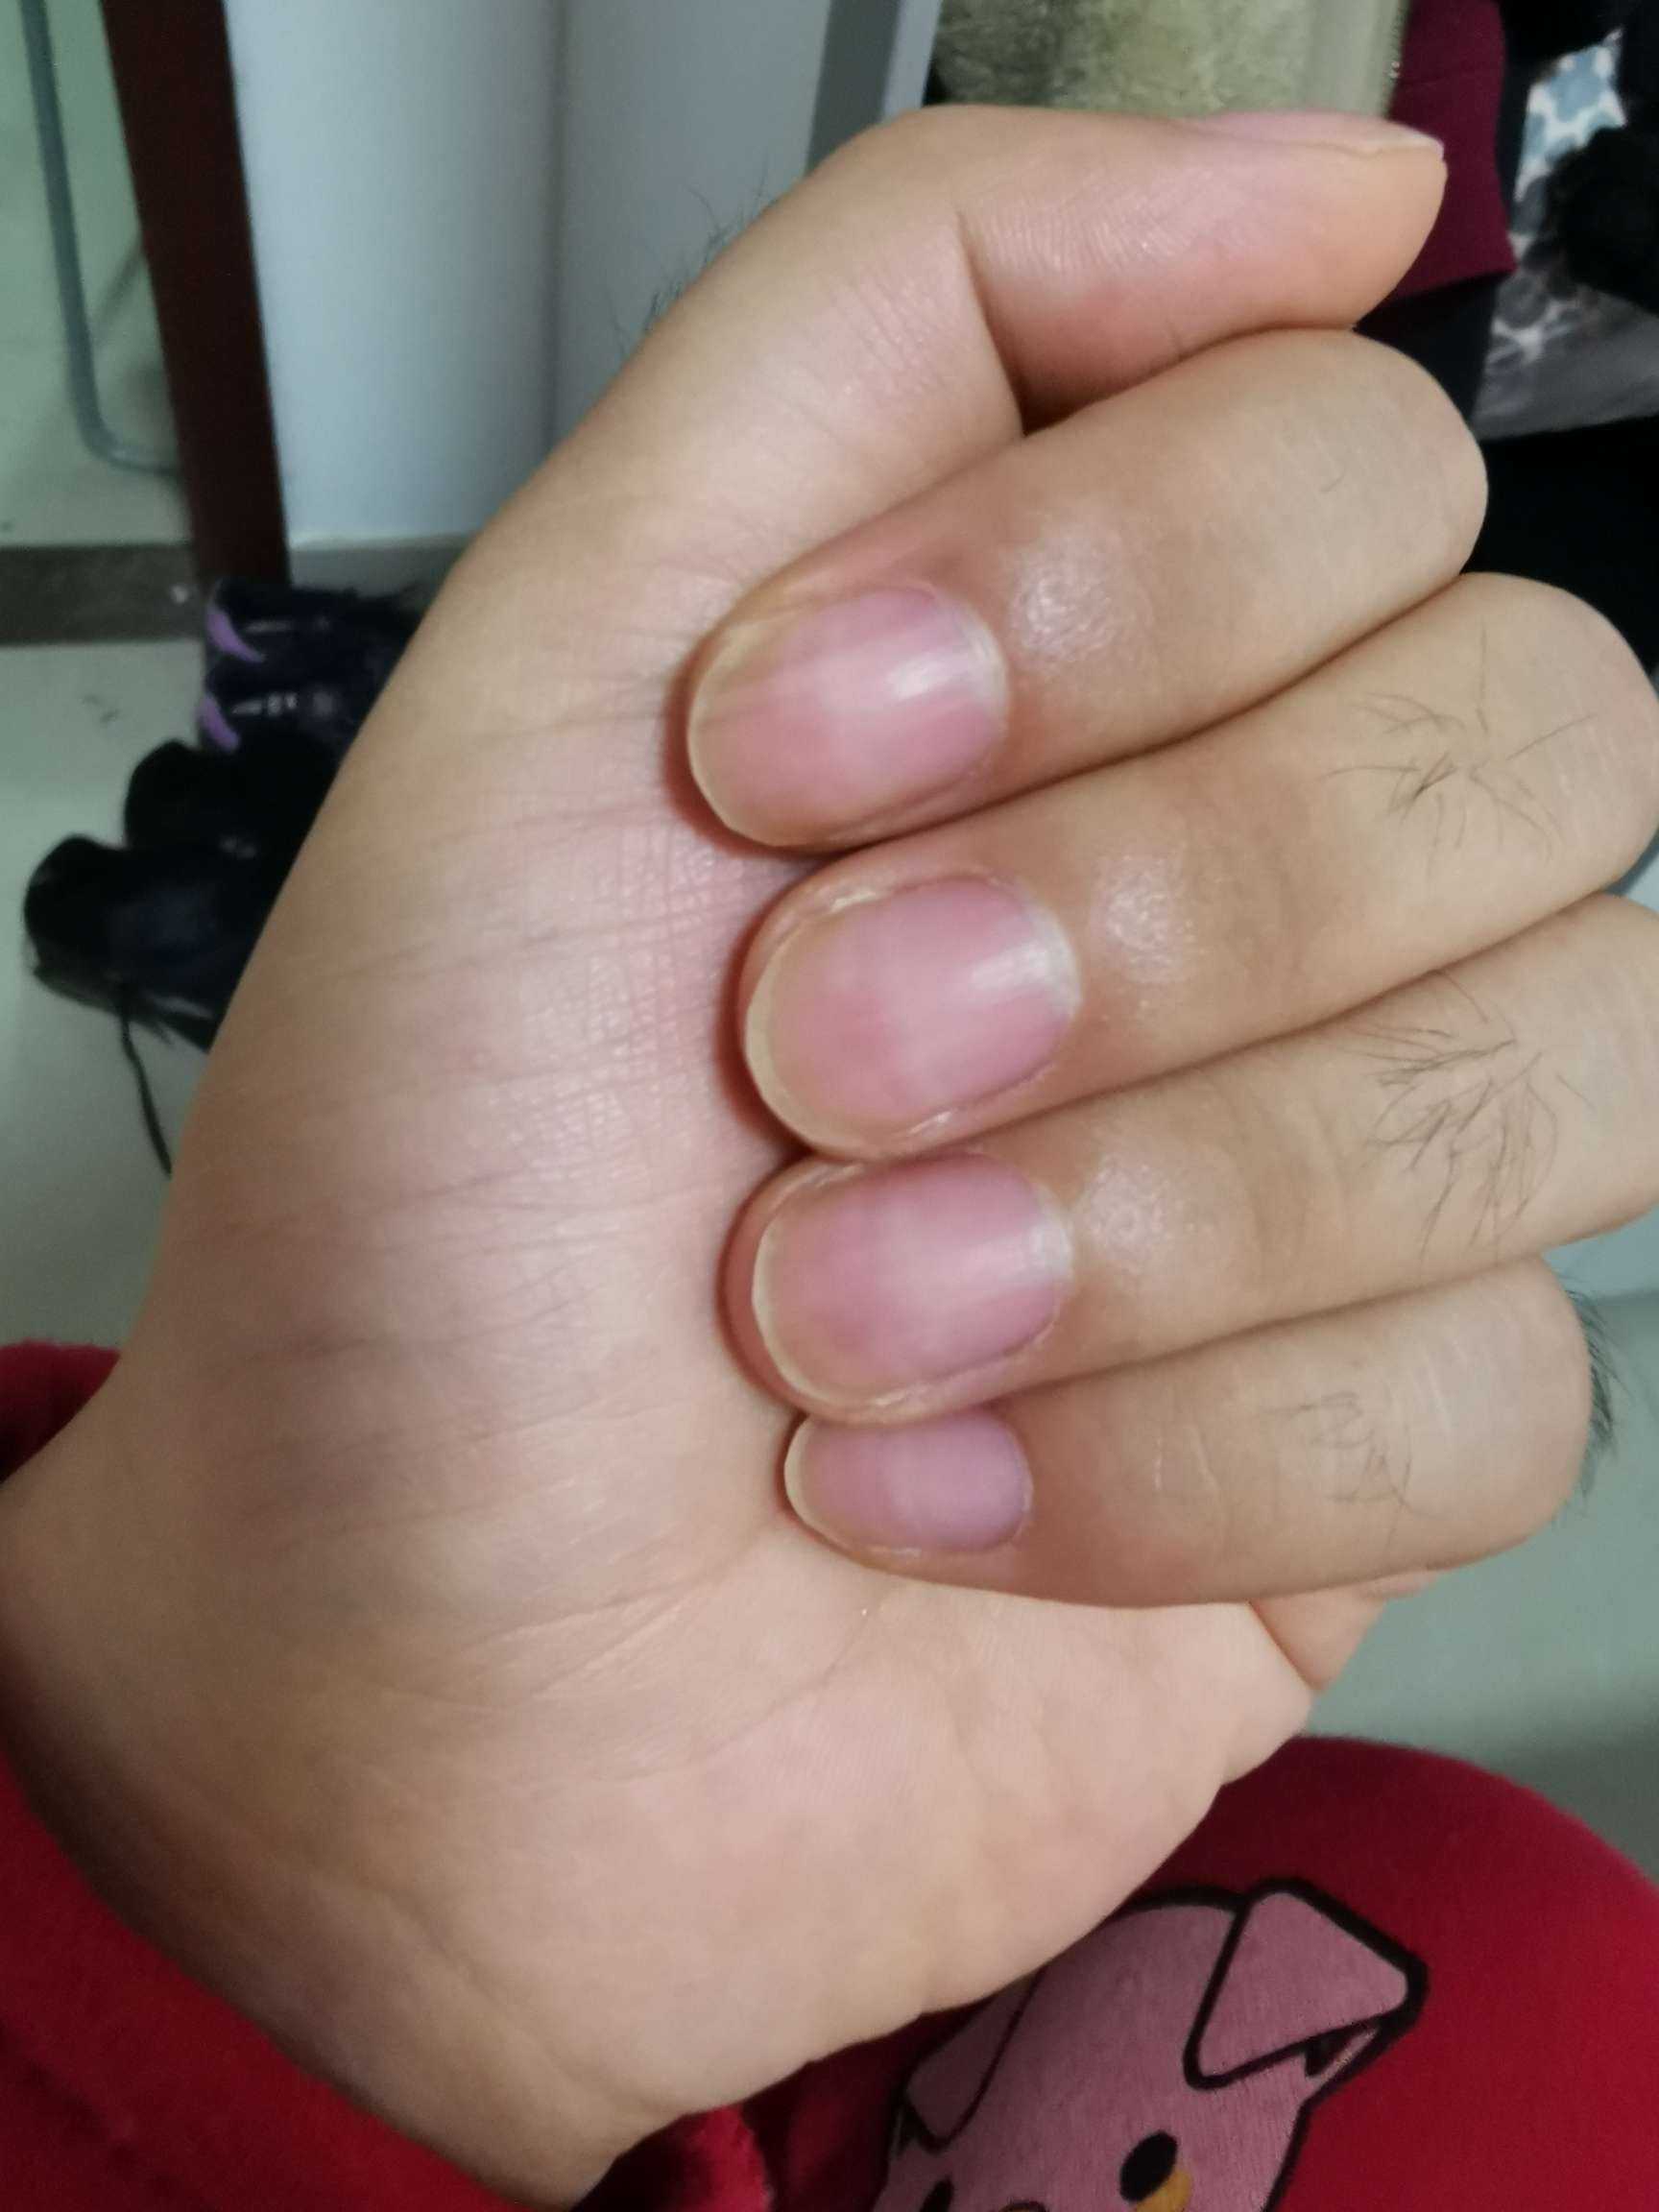 化疗结束快三个月,今天发现新长出的指甲颜色比之前的